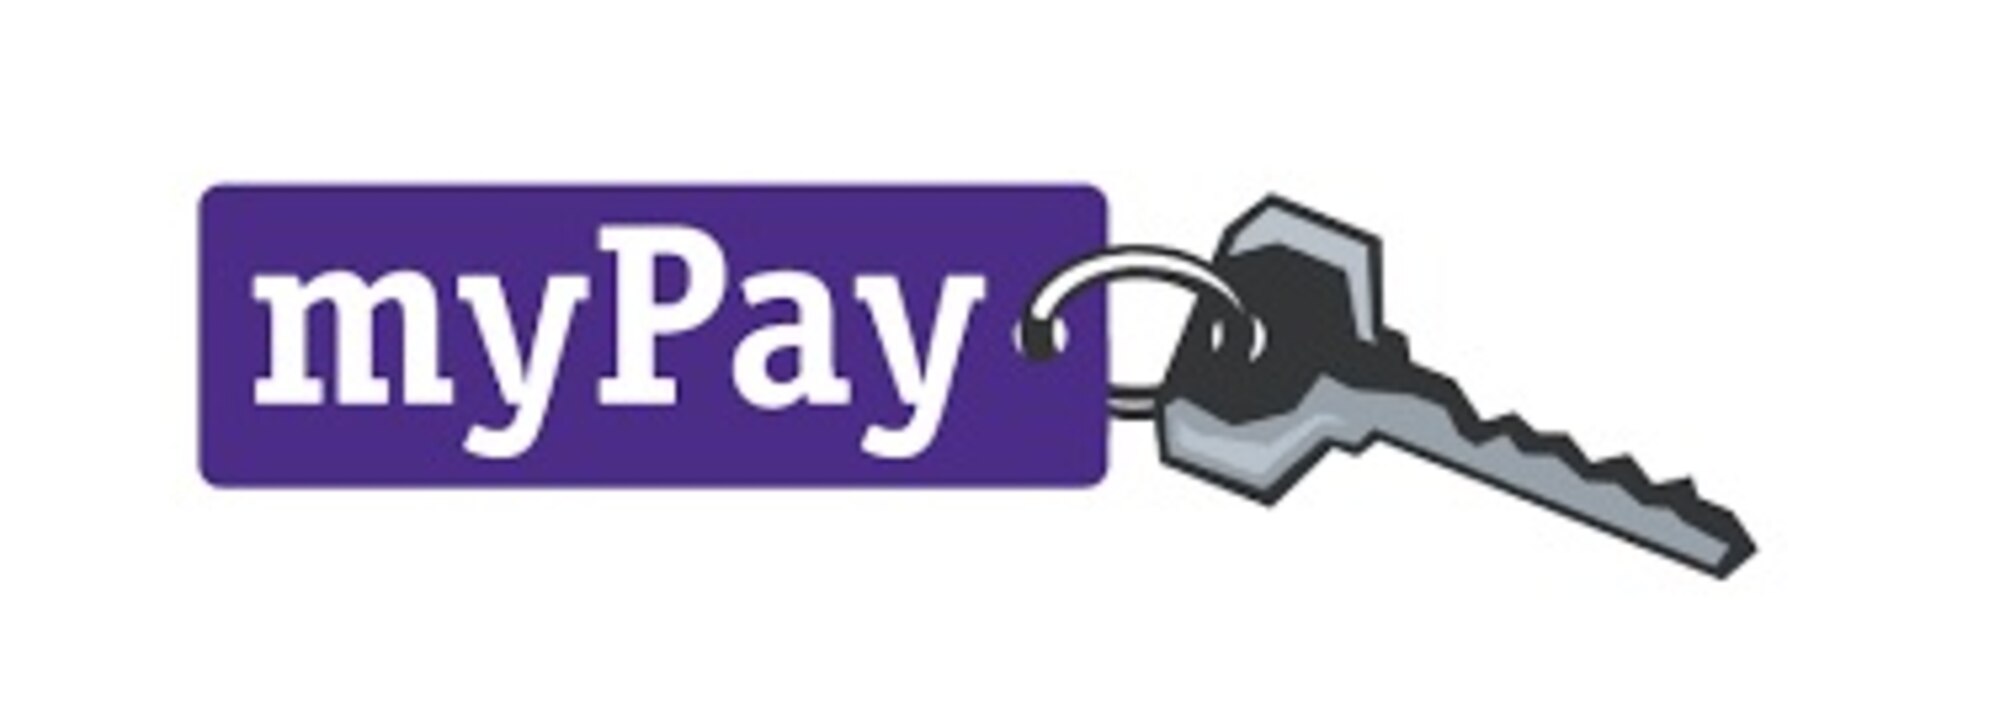 myPay logo